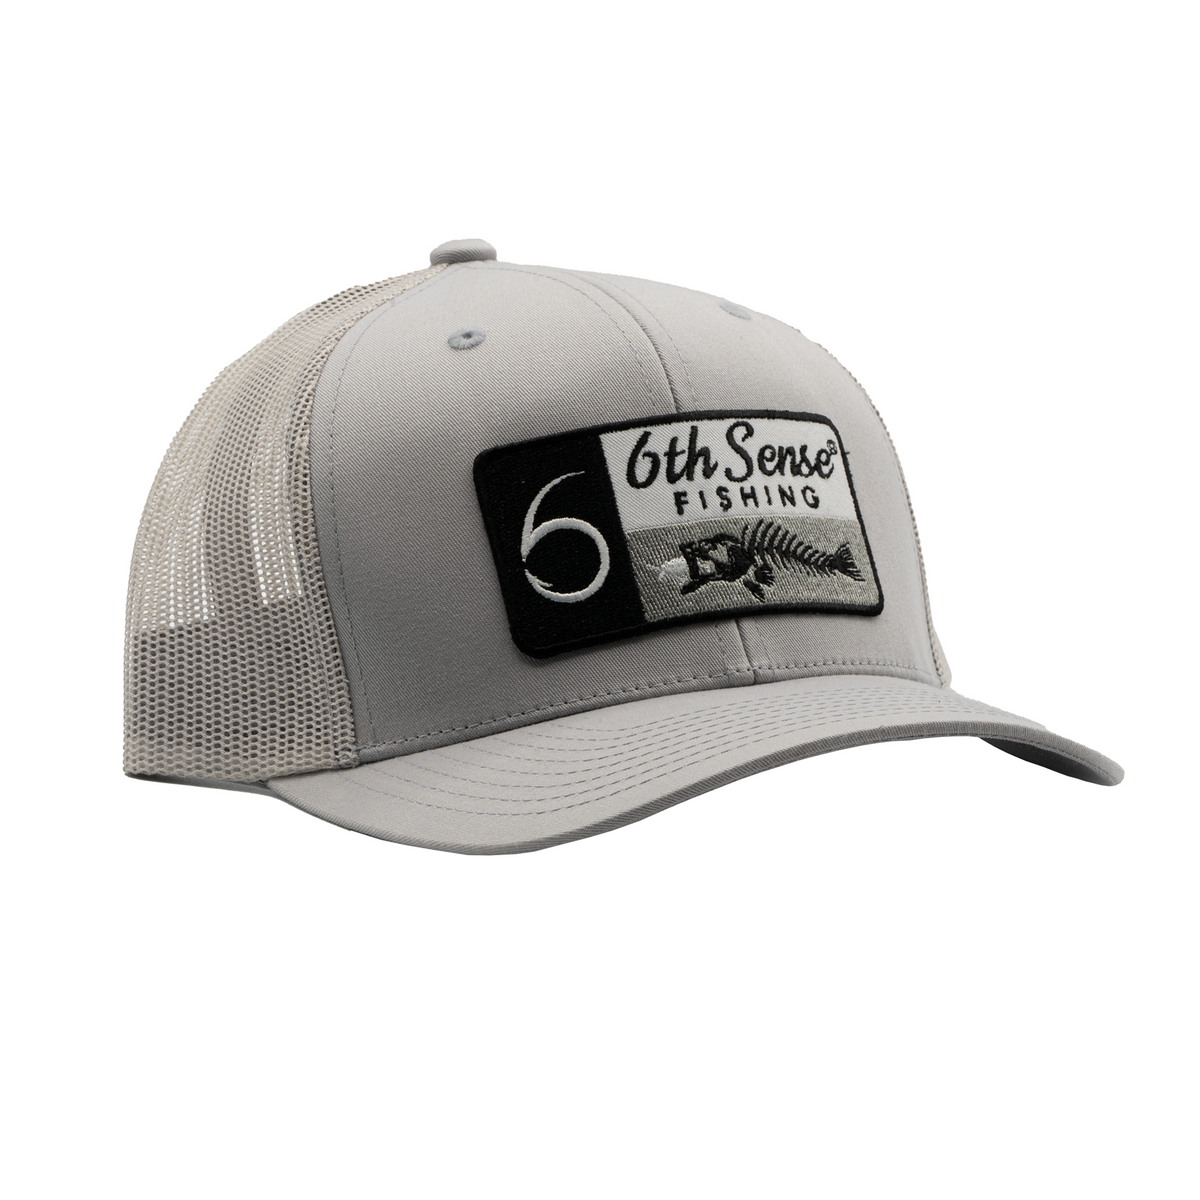 6th Sense Fishing - Premium Hats - Texas Fishbones